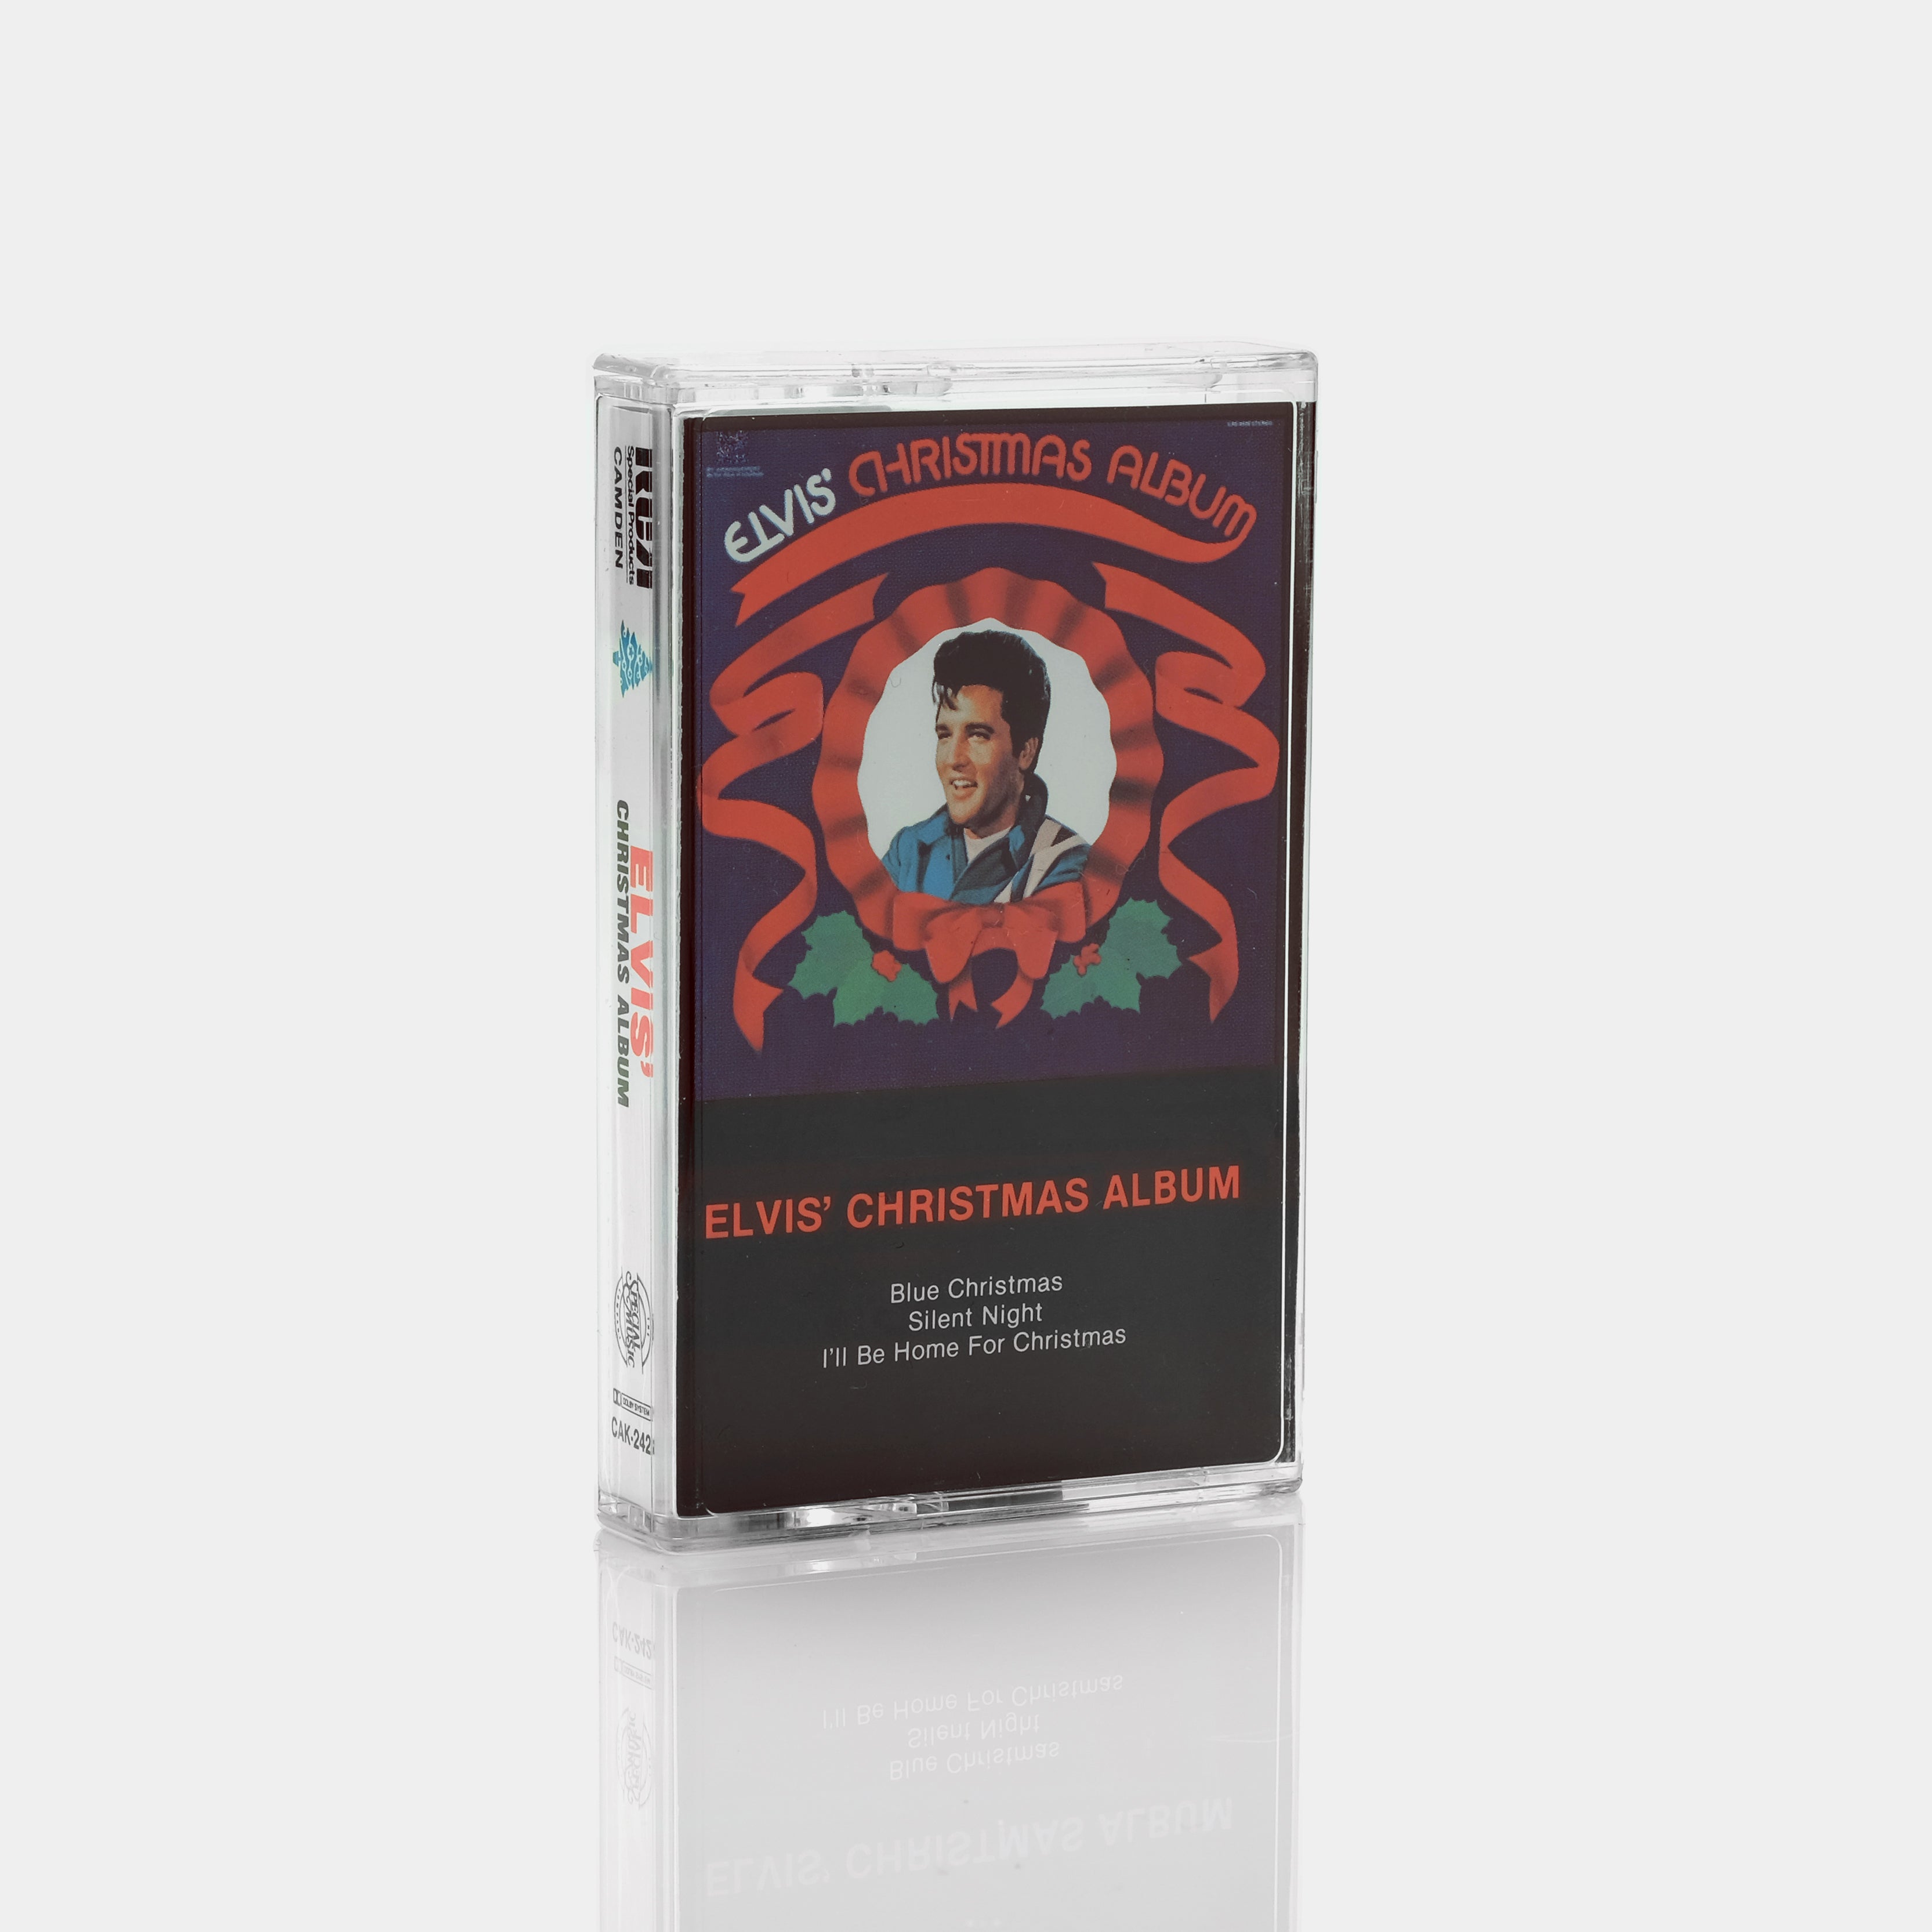 Elvis Presley - Elvis' Christmas Album Cassette Tape